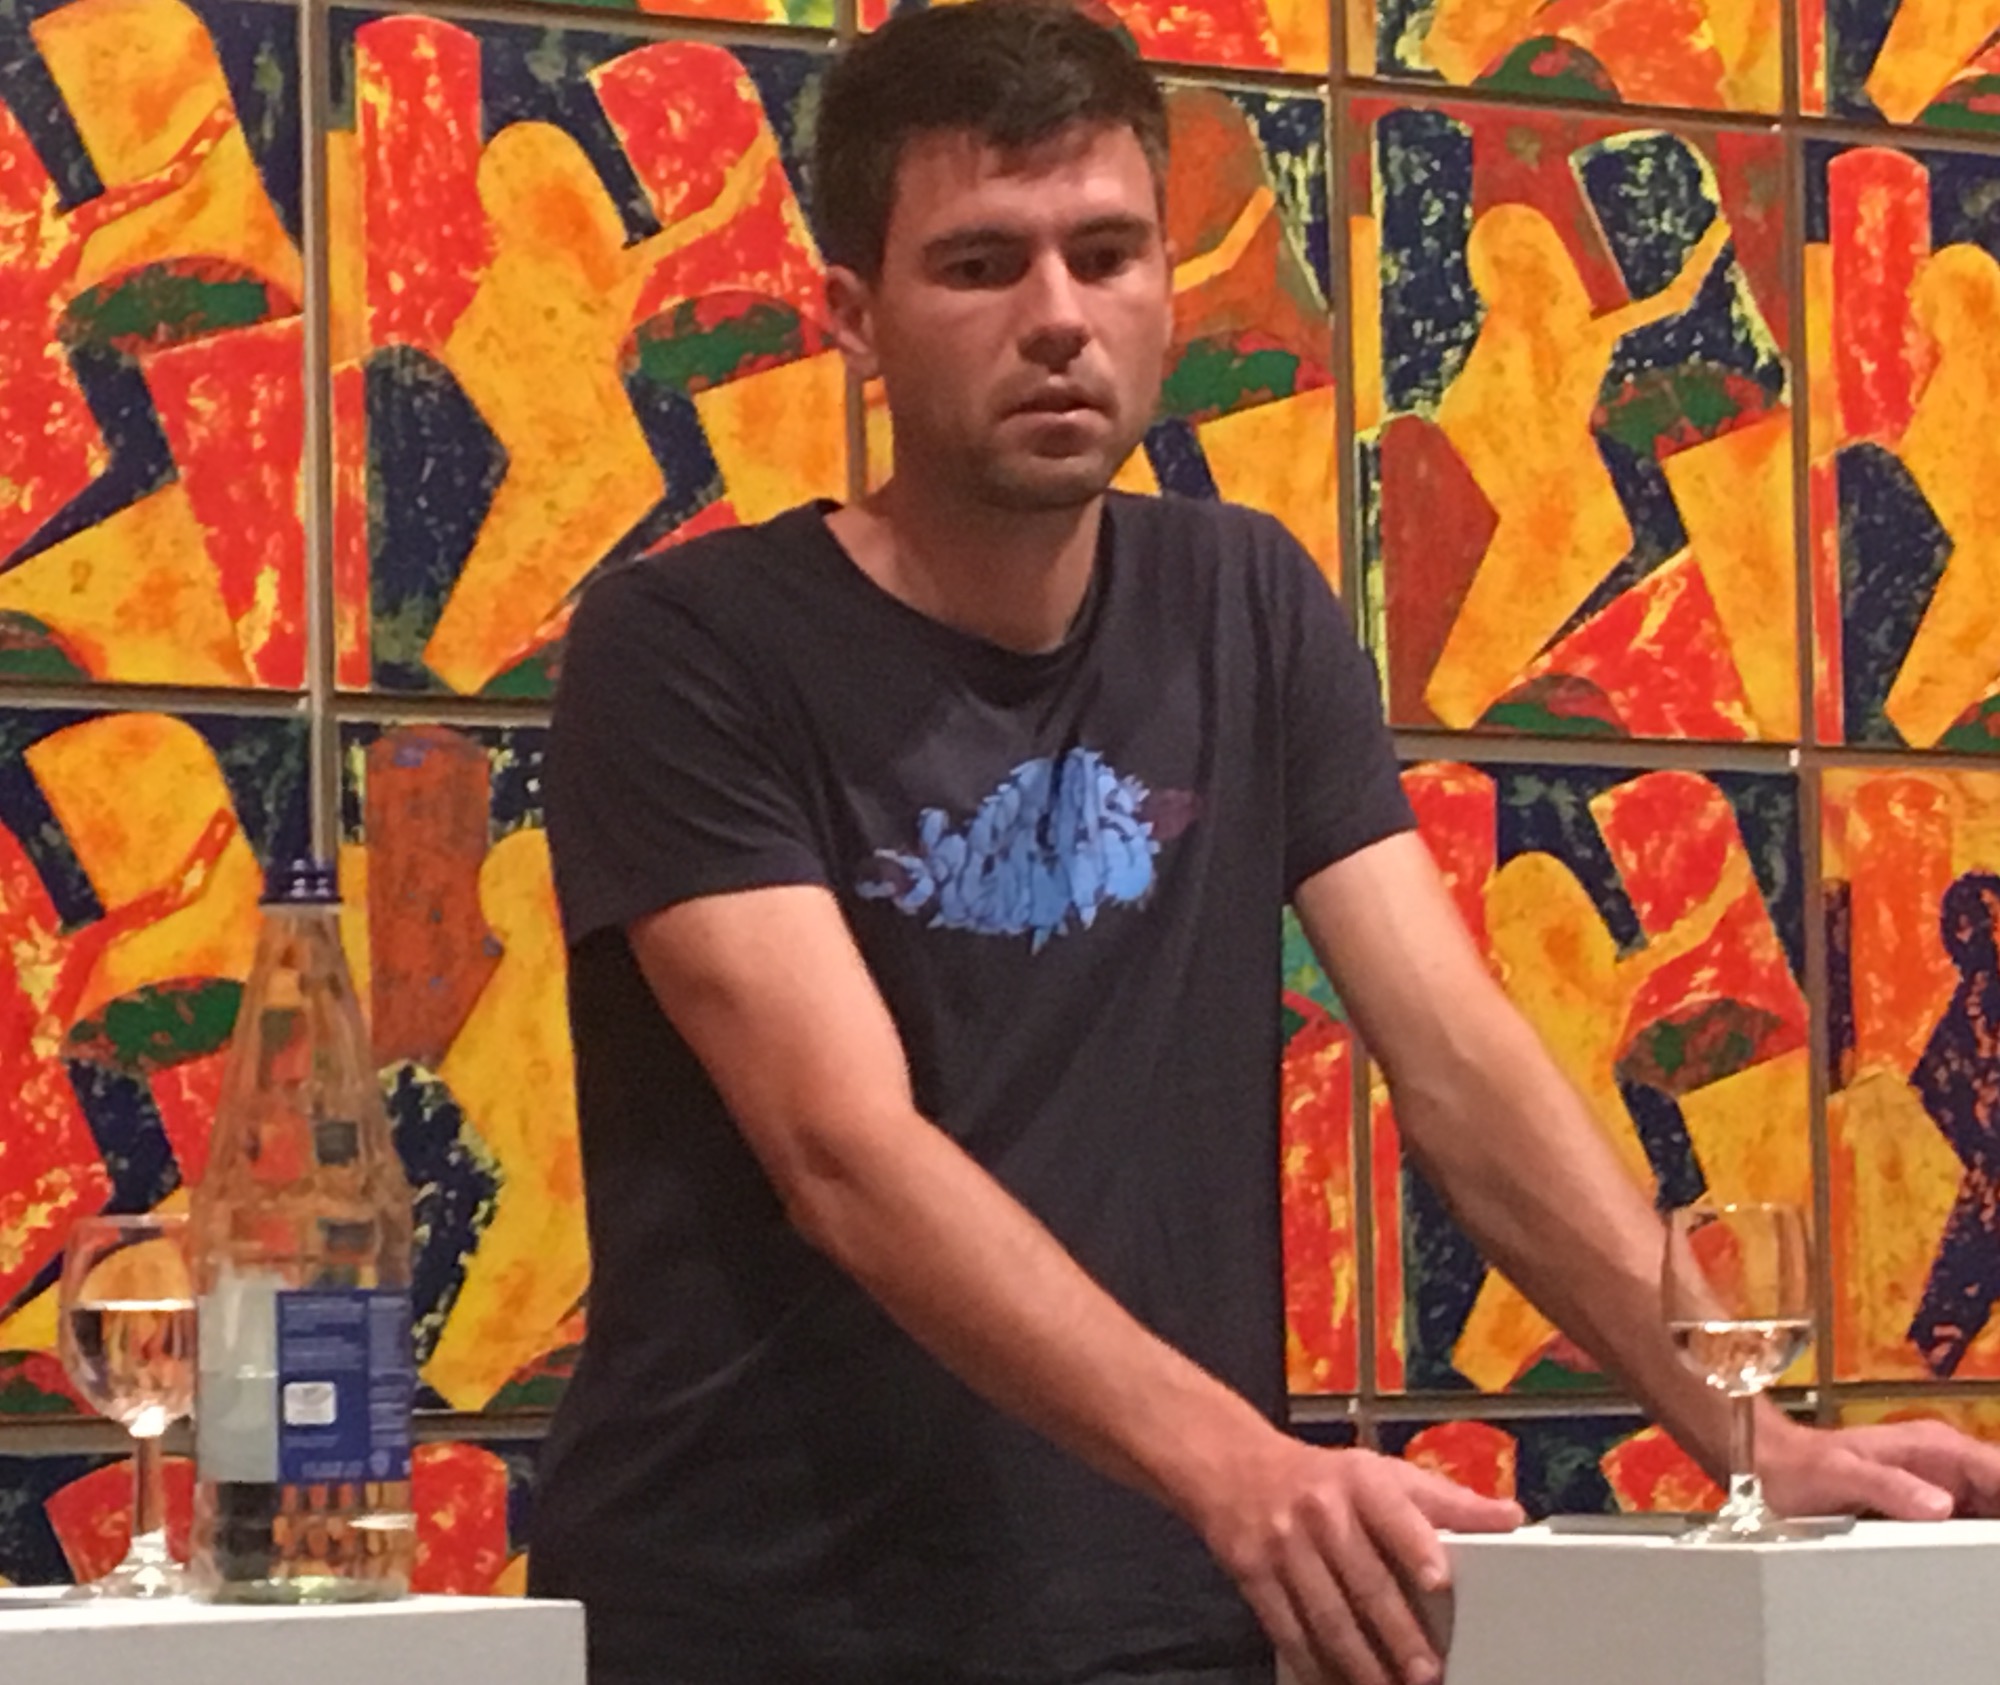 "Ironie ist für uns ein Mittel der Kunst": Philipp Glatz vom Künstler-Duo Bildstein⎜Glatz bei einer Diskussion über das Künstlerbild von heute im Kunstmuseum Thurgau